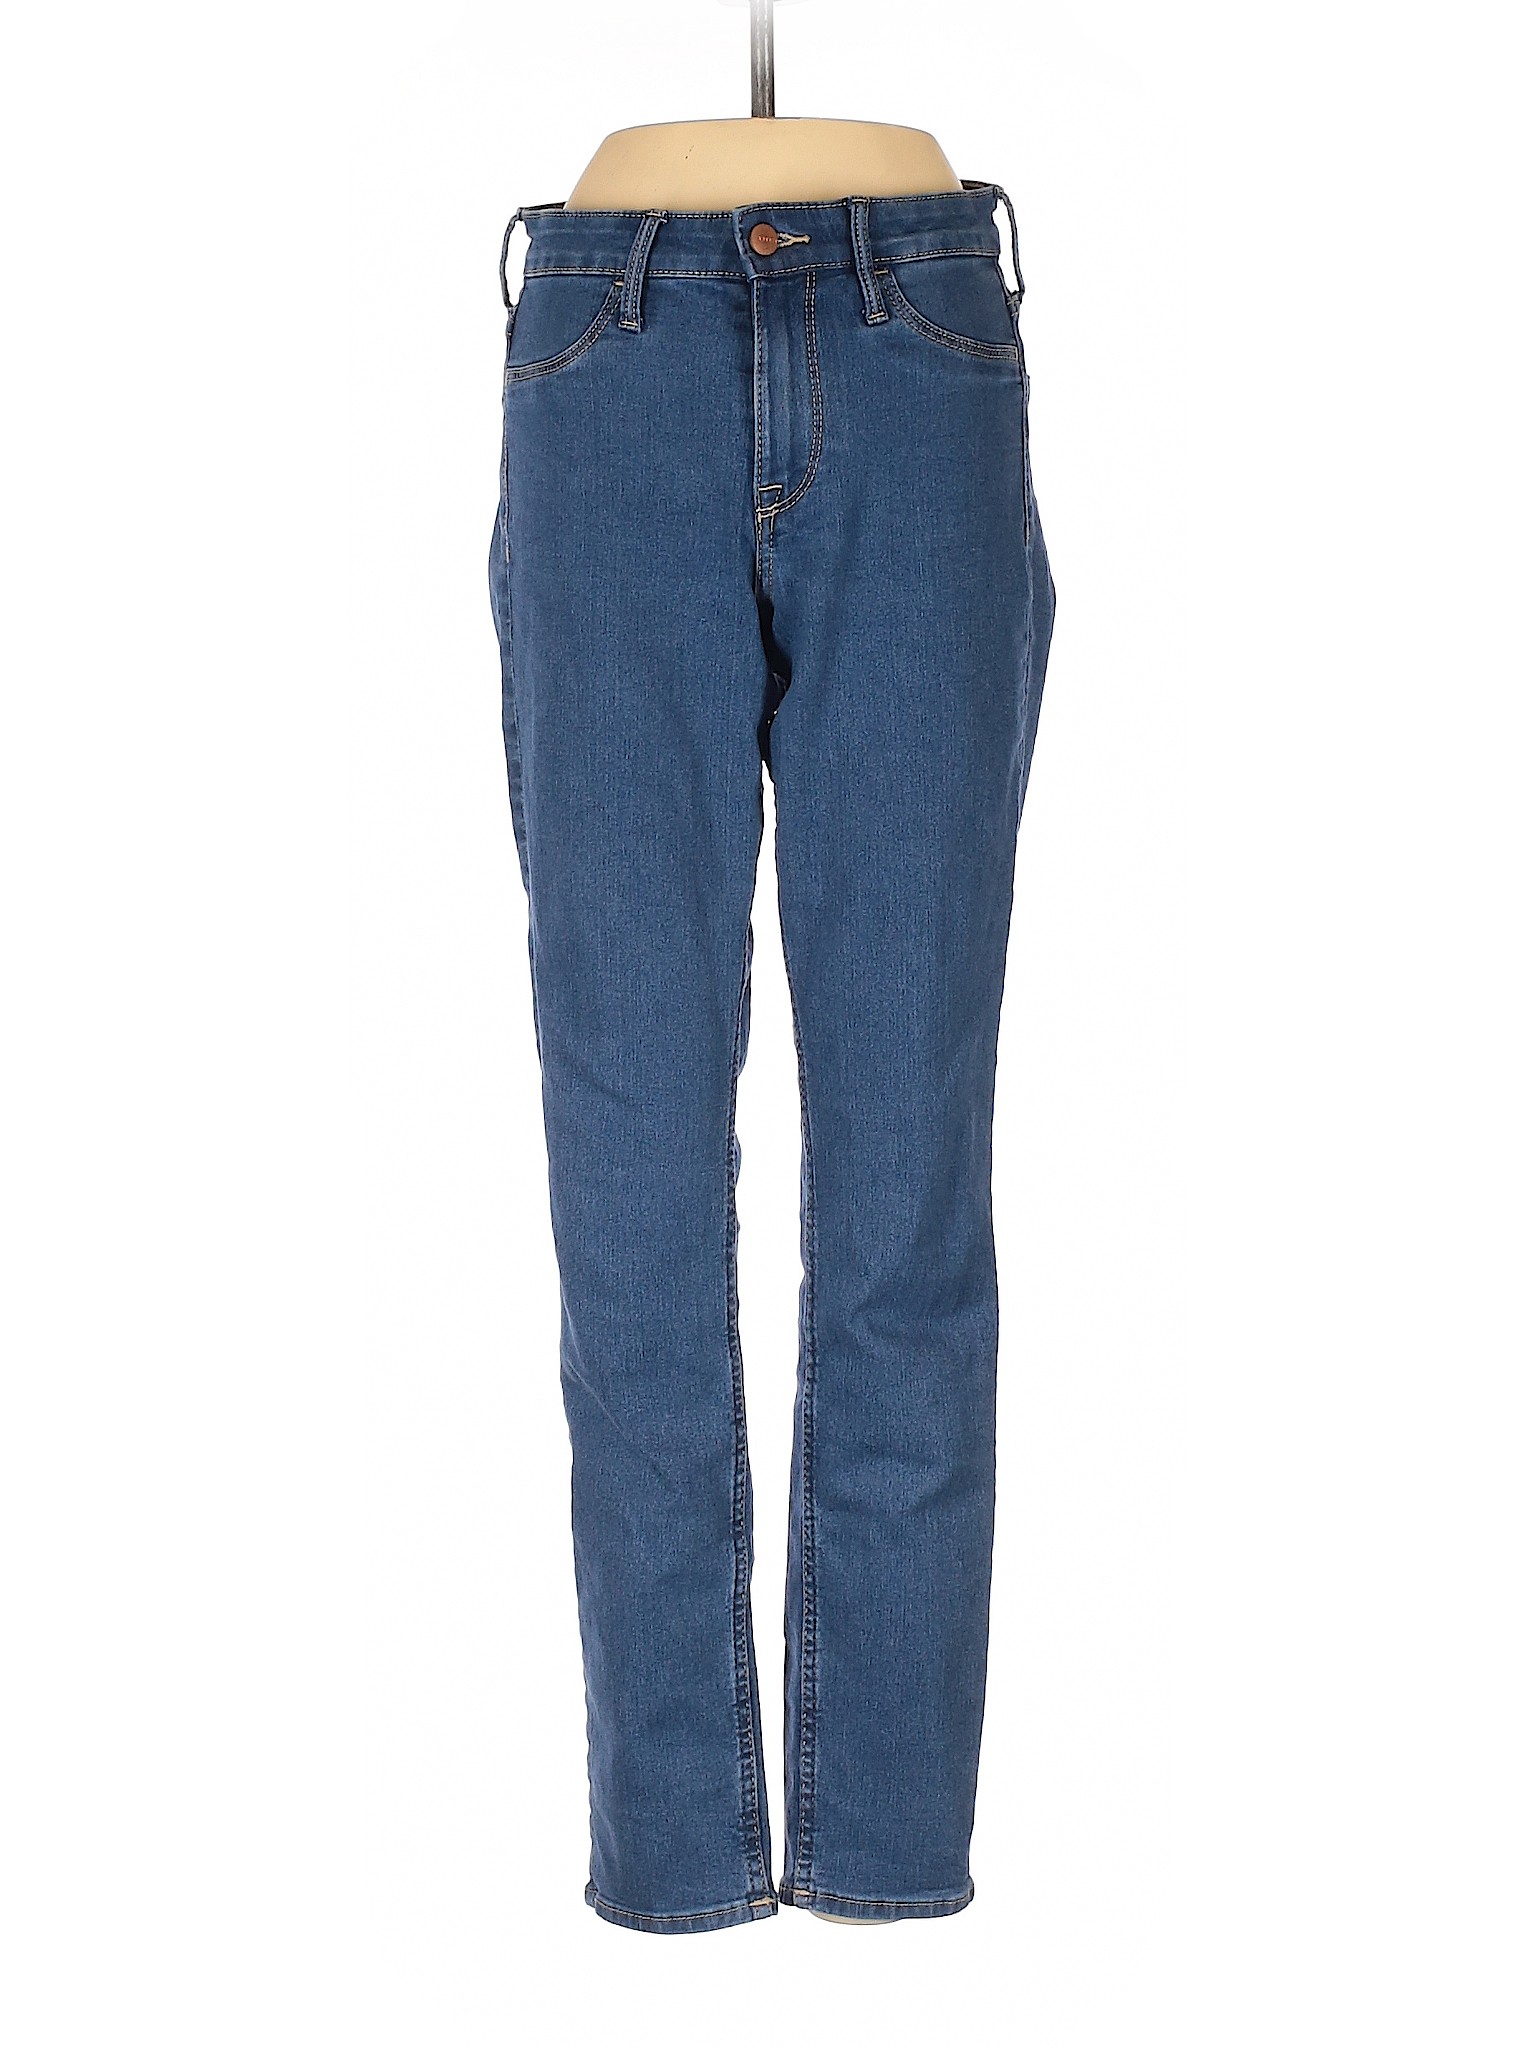 &Denim by H&M Women Blue Jeans 26W | eBay